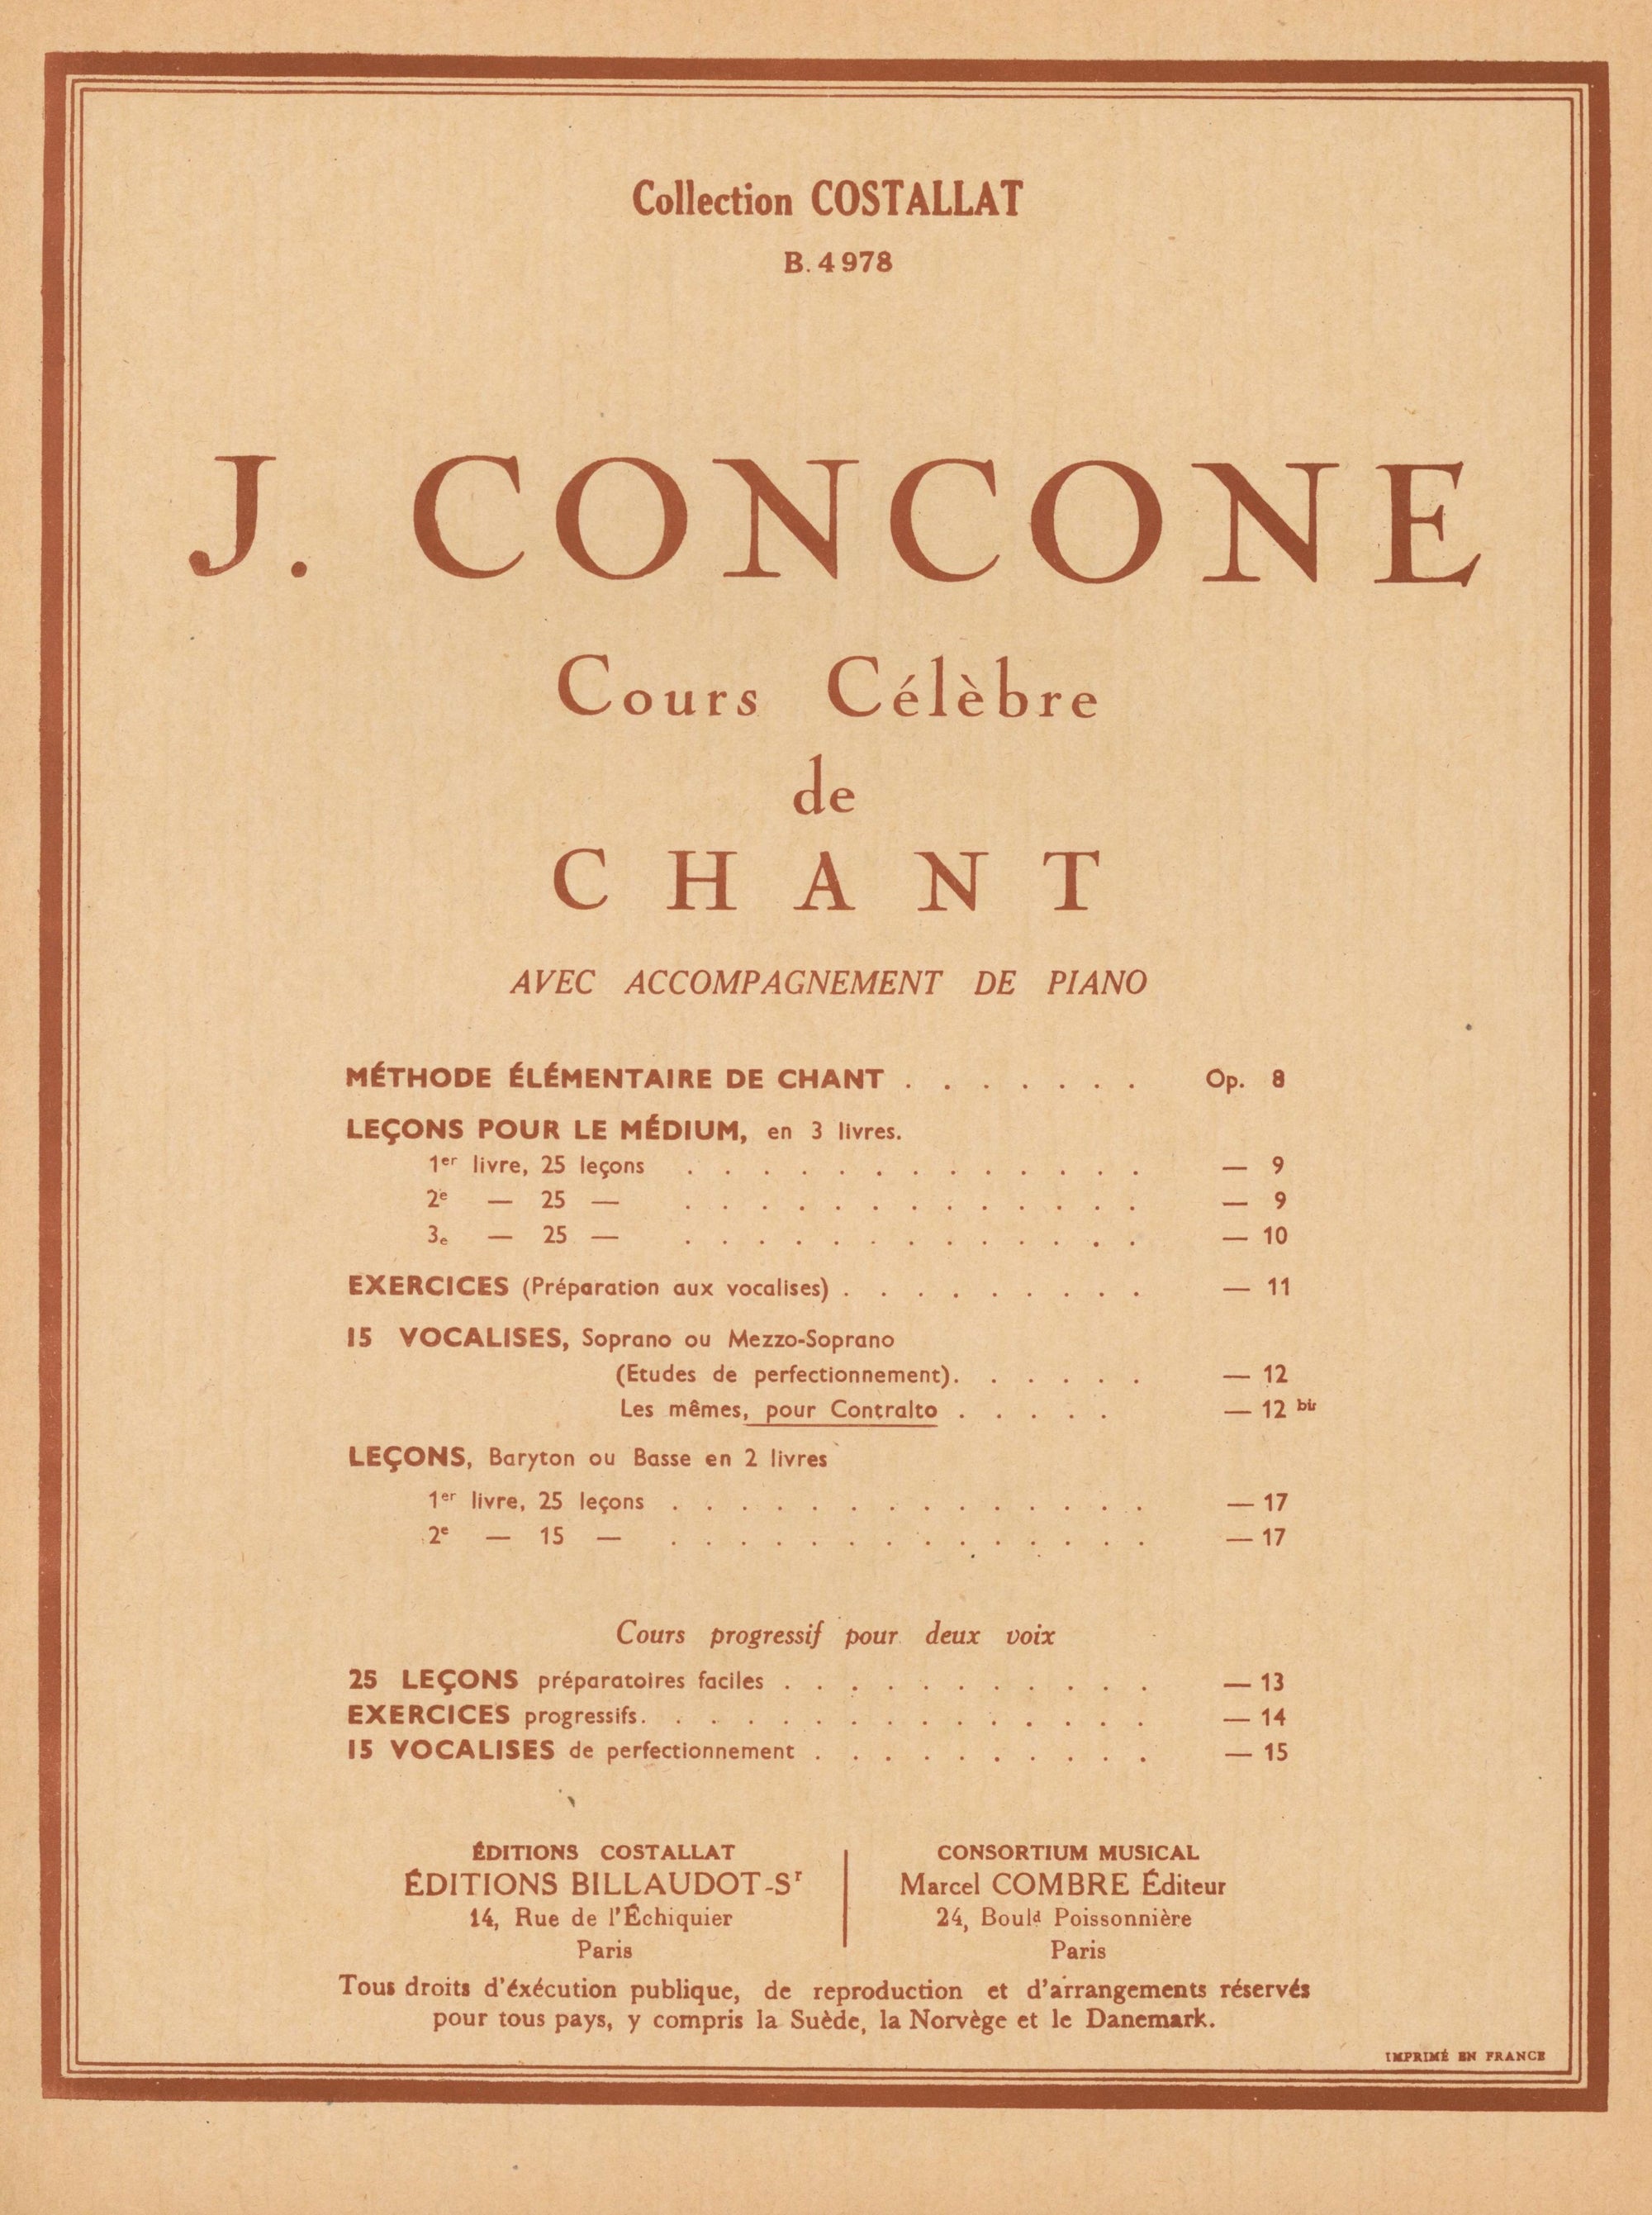 Concone: 15 Vocalises (Les mêmes, pour contralto), Op. 12bis